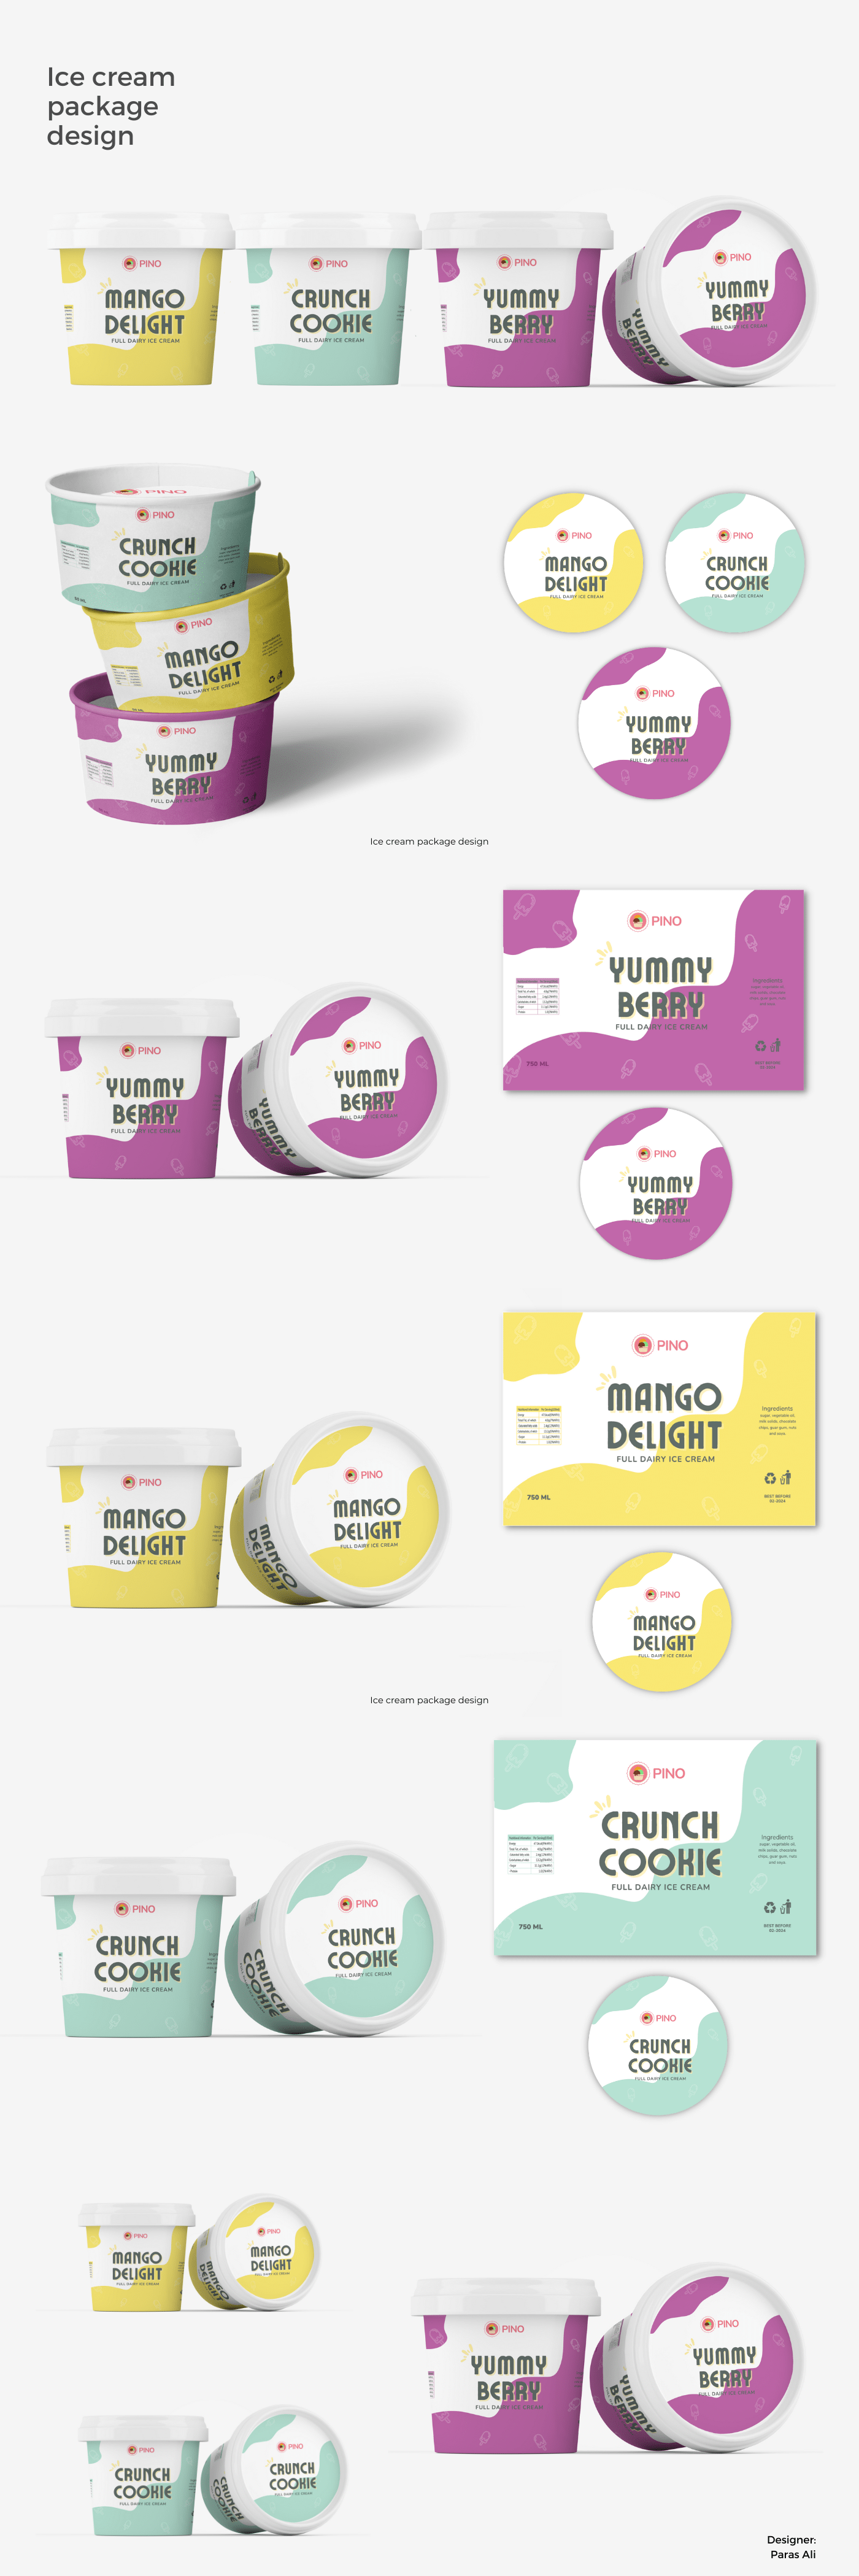 Packaging design, Ice cream label design